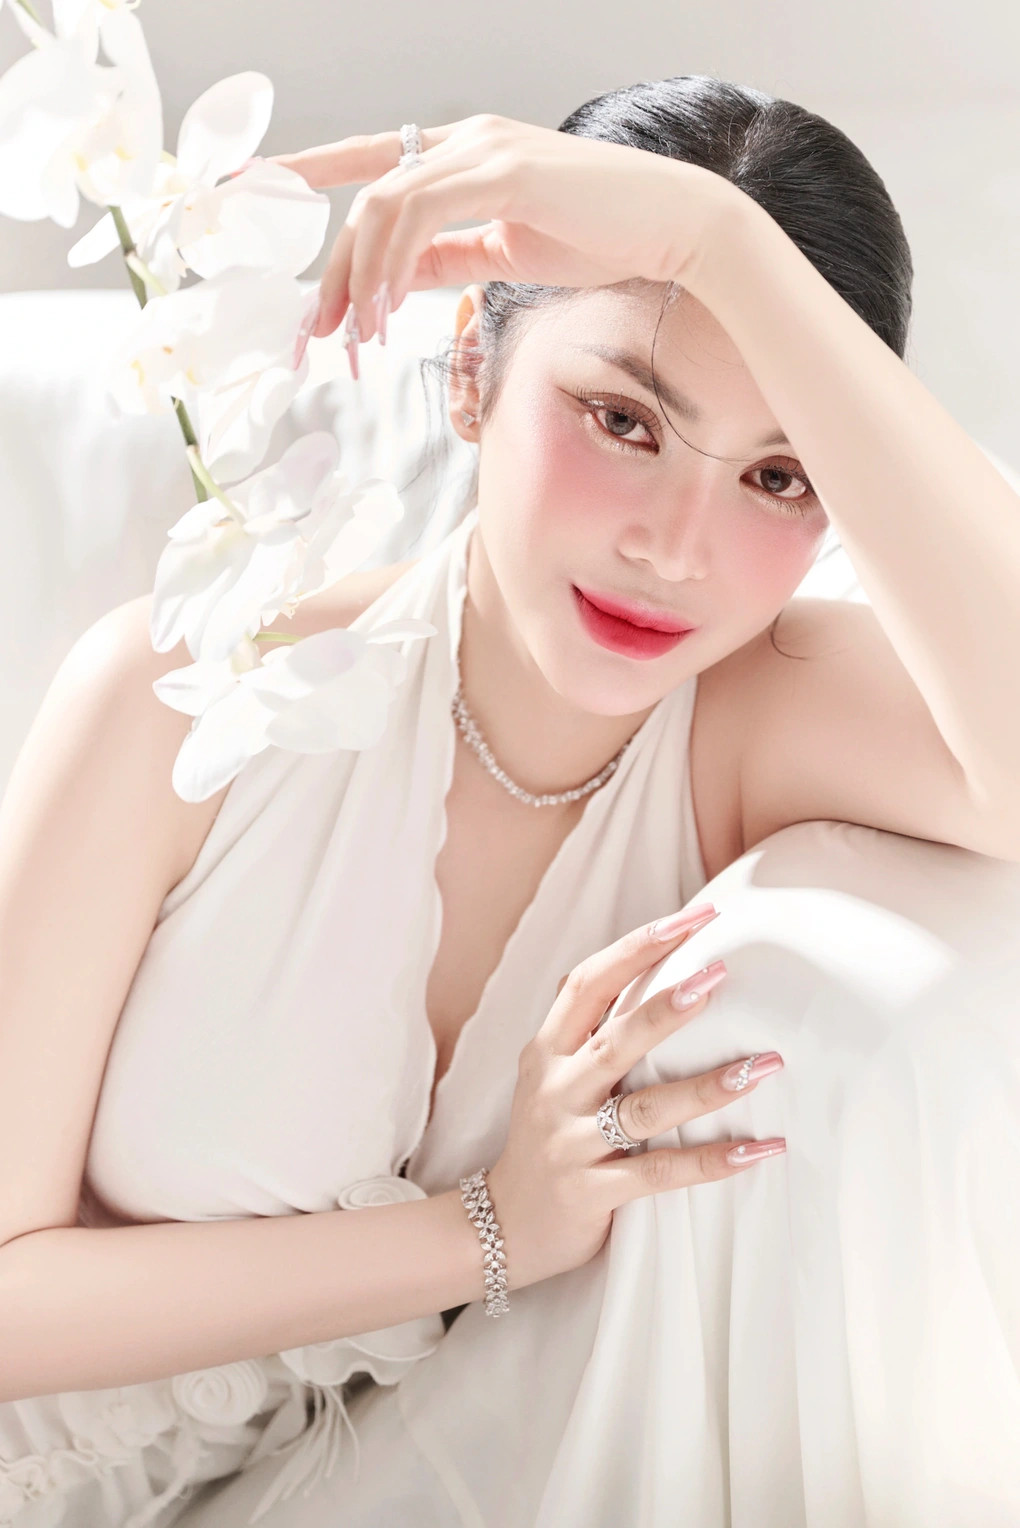 Lily Chen: Ngoại hình khiến nhiều người lầm tưởng tôi là con nhà giàu - ảnh 1